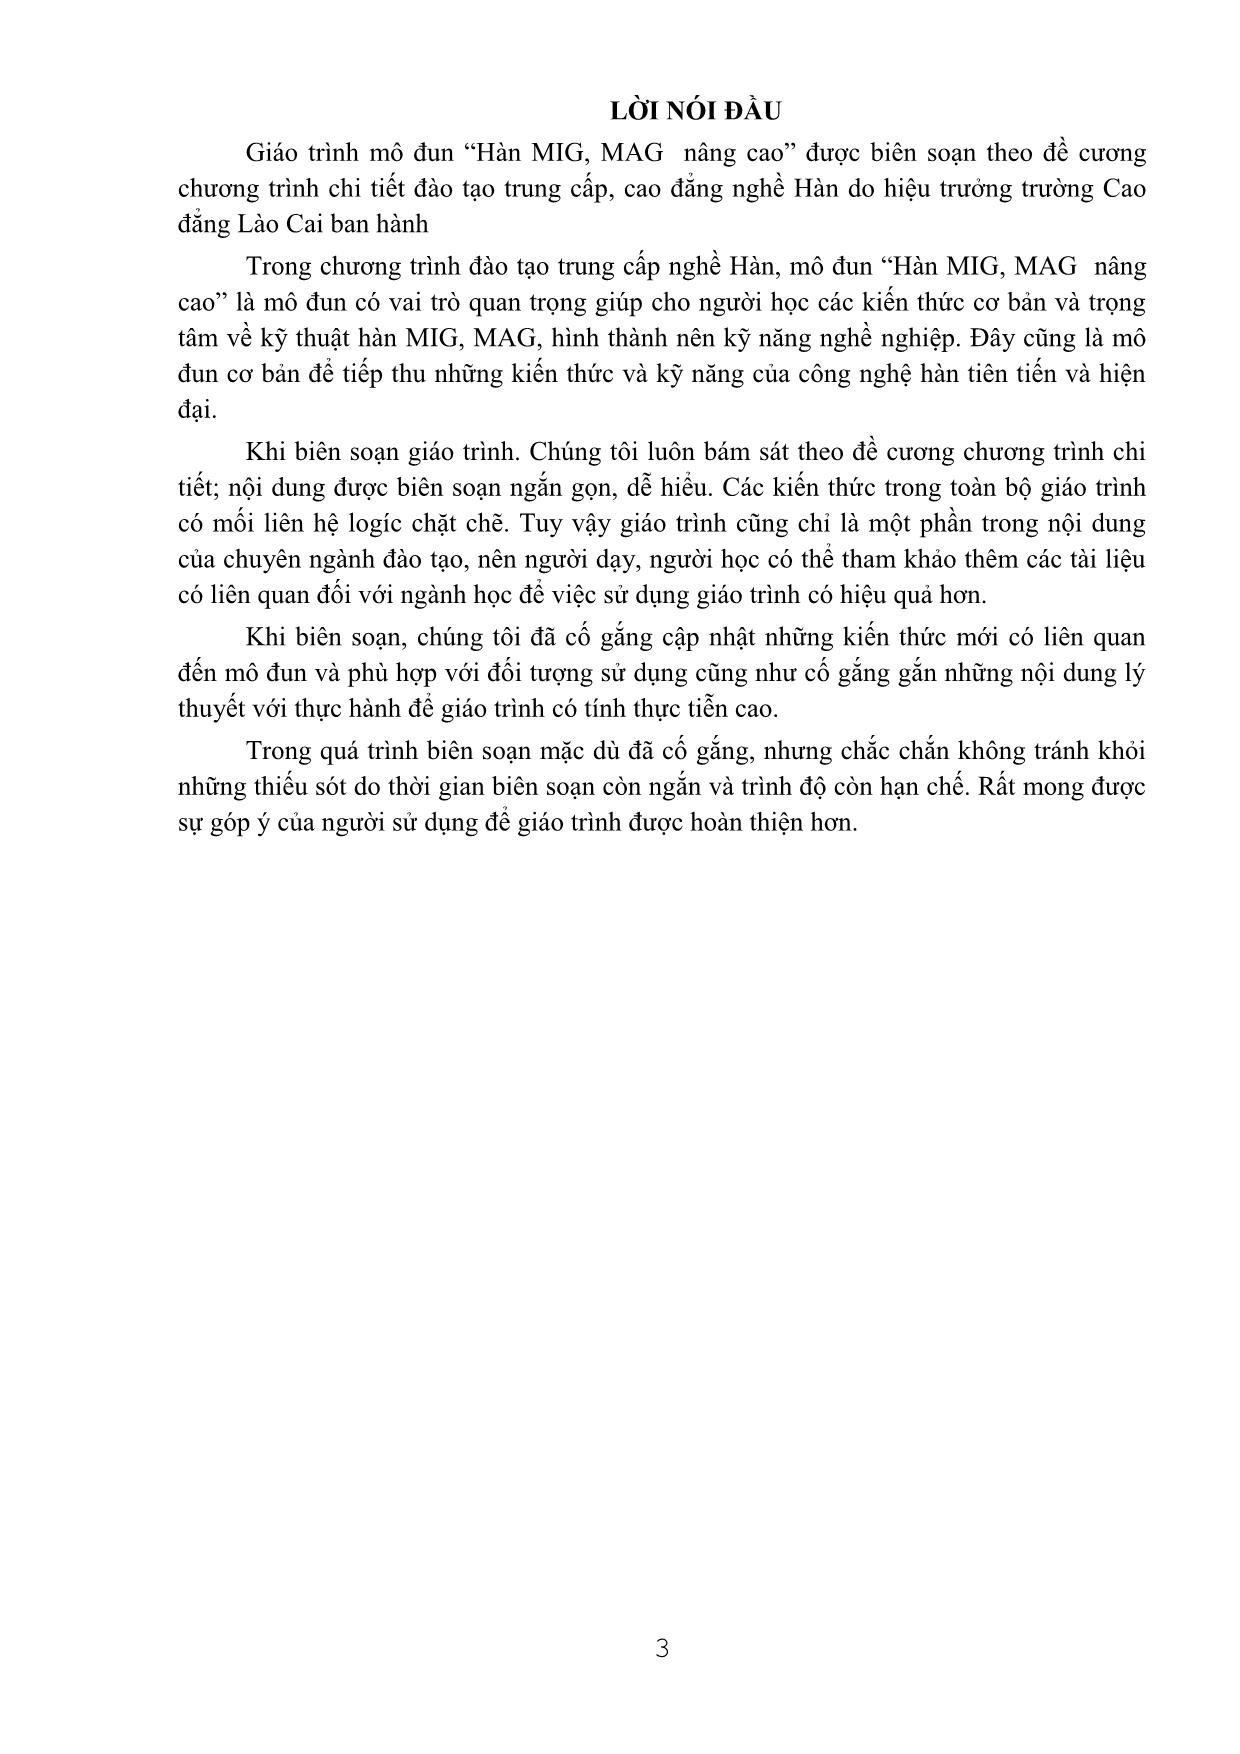 Giáo trình Hàn MIG/MAG (Mới) trang 3